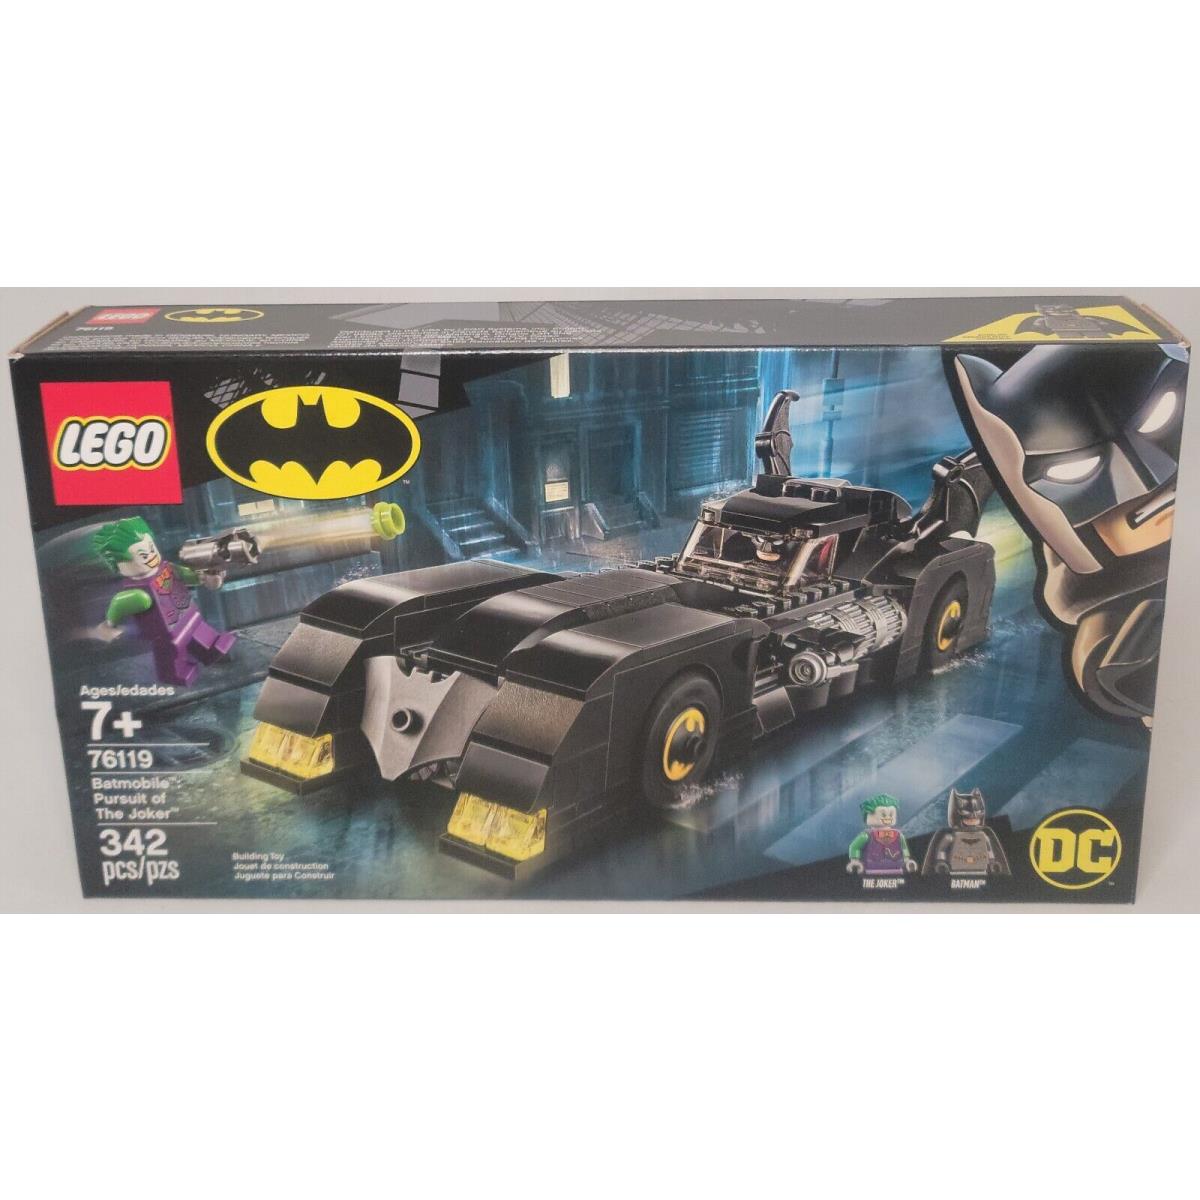 Lego 76119 Batmobile: Pursuit of The Joker Batman DC Comics Super Heroes